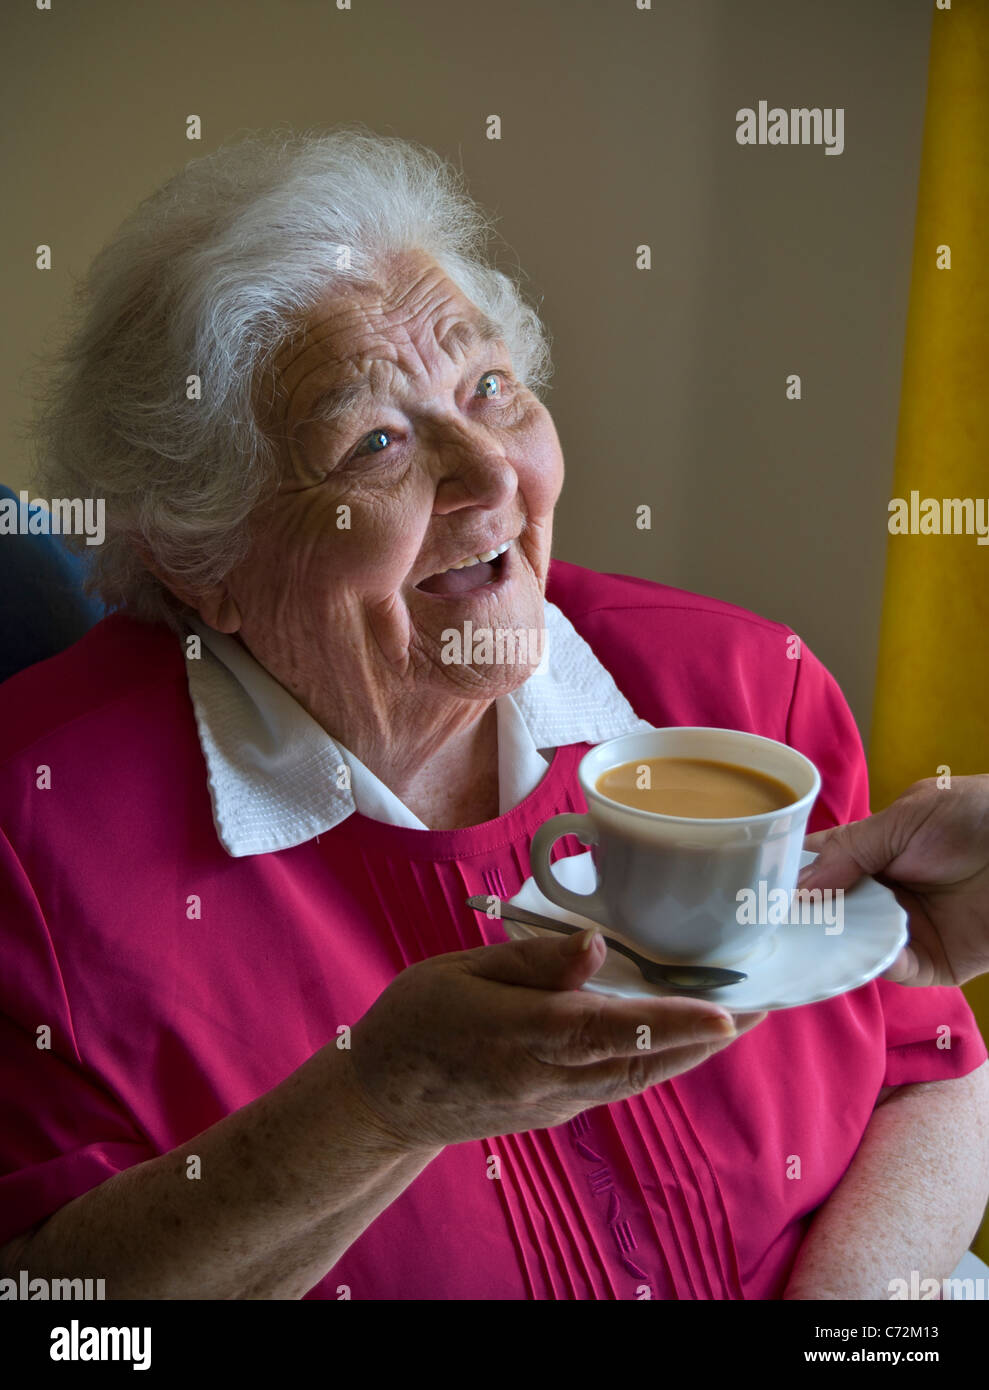 Personne âgée soignant de thé Happy Alert personne âgée retraité de la vieille âge vieille dame âgée reçoit une tasse de thé de son compagnon soignant de soin de soignant dans sa chambre lumineuse et aérée Banque D'Images